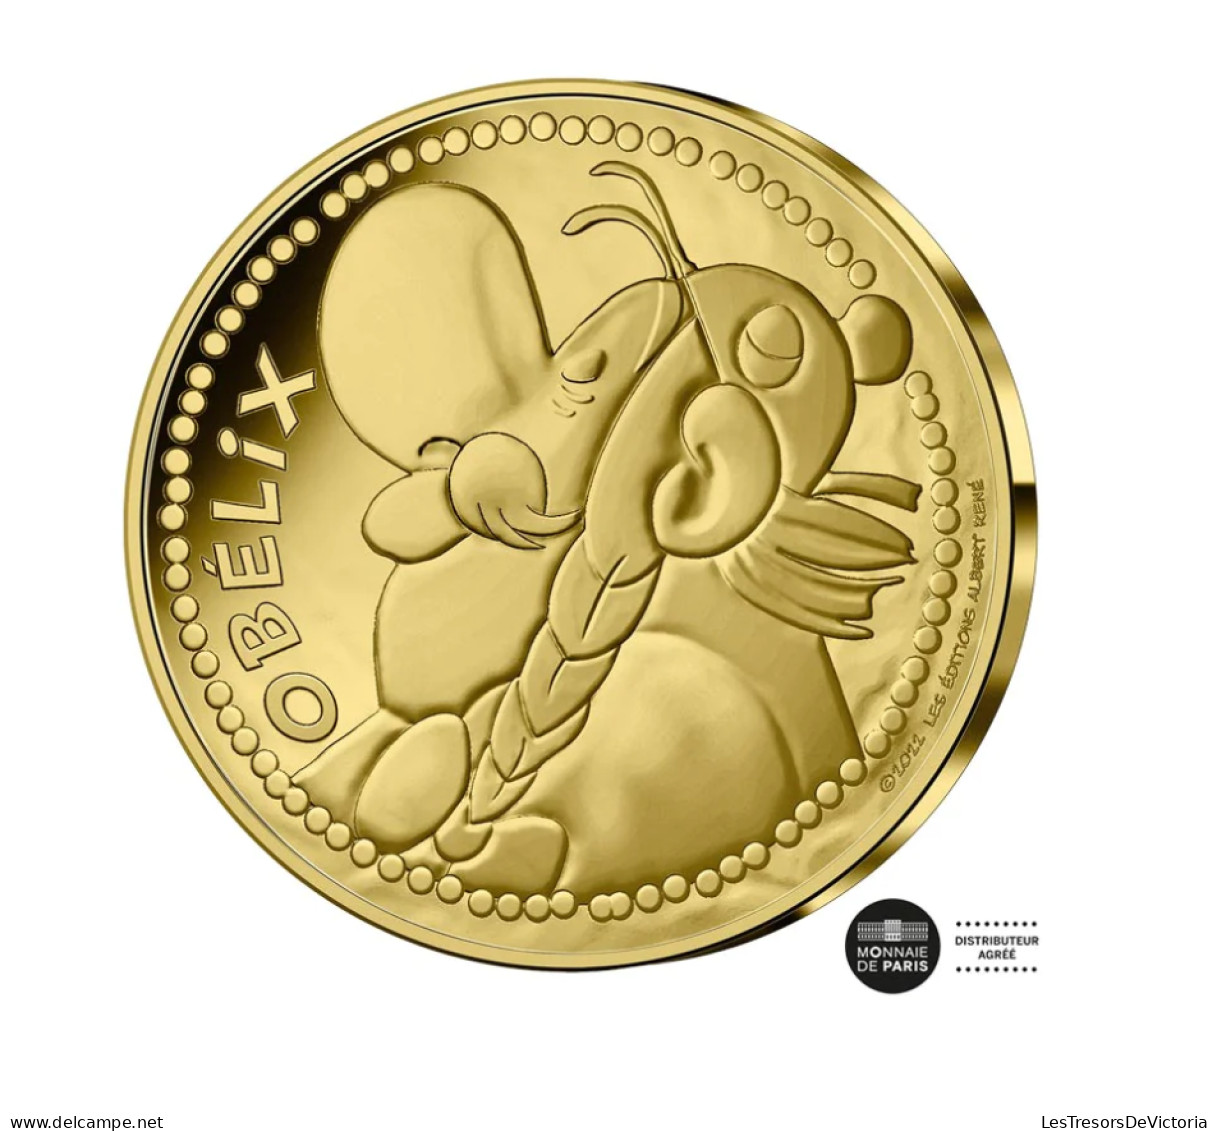 Monnaies - Astérix - Monnaie De 250 Euros - Or - Obélix - Vague 2 - BU - 2022 - France